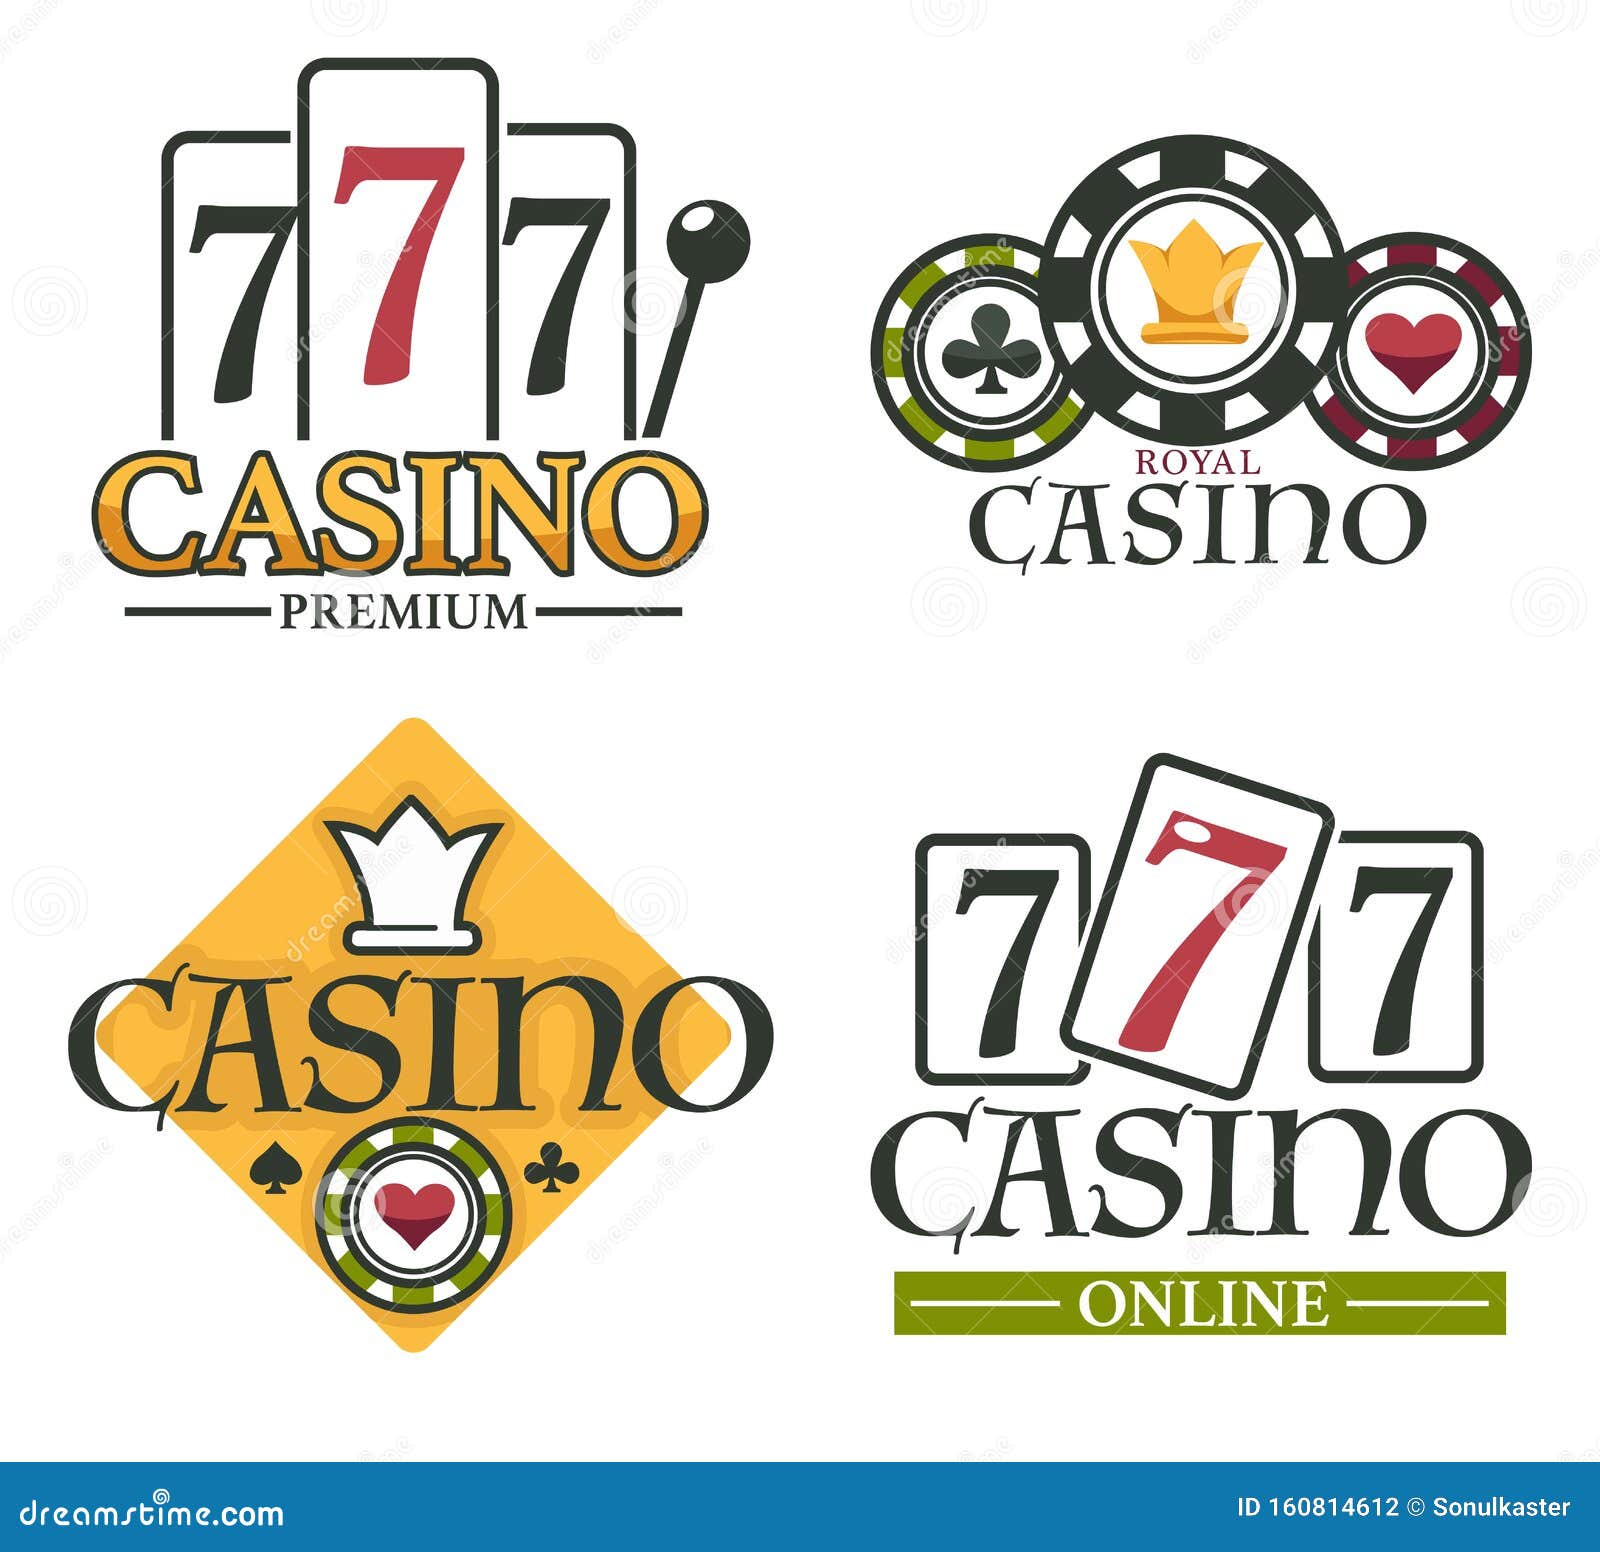 Овладейте искусством гамма казино с помощью этих 3 советов